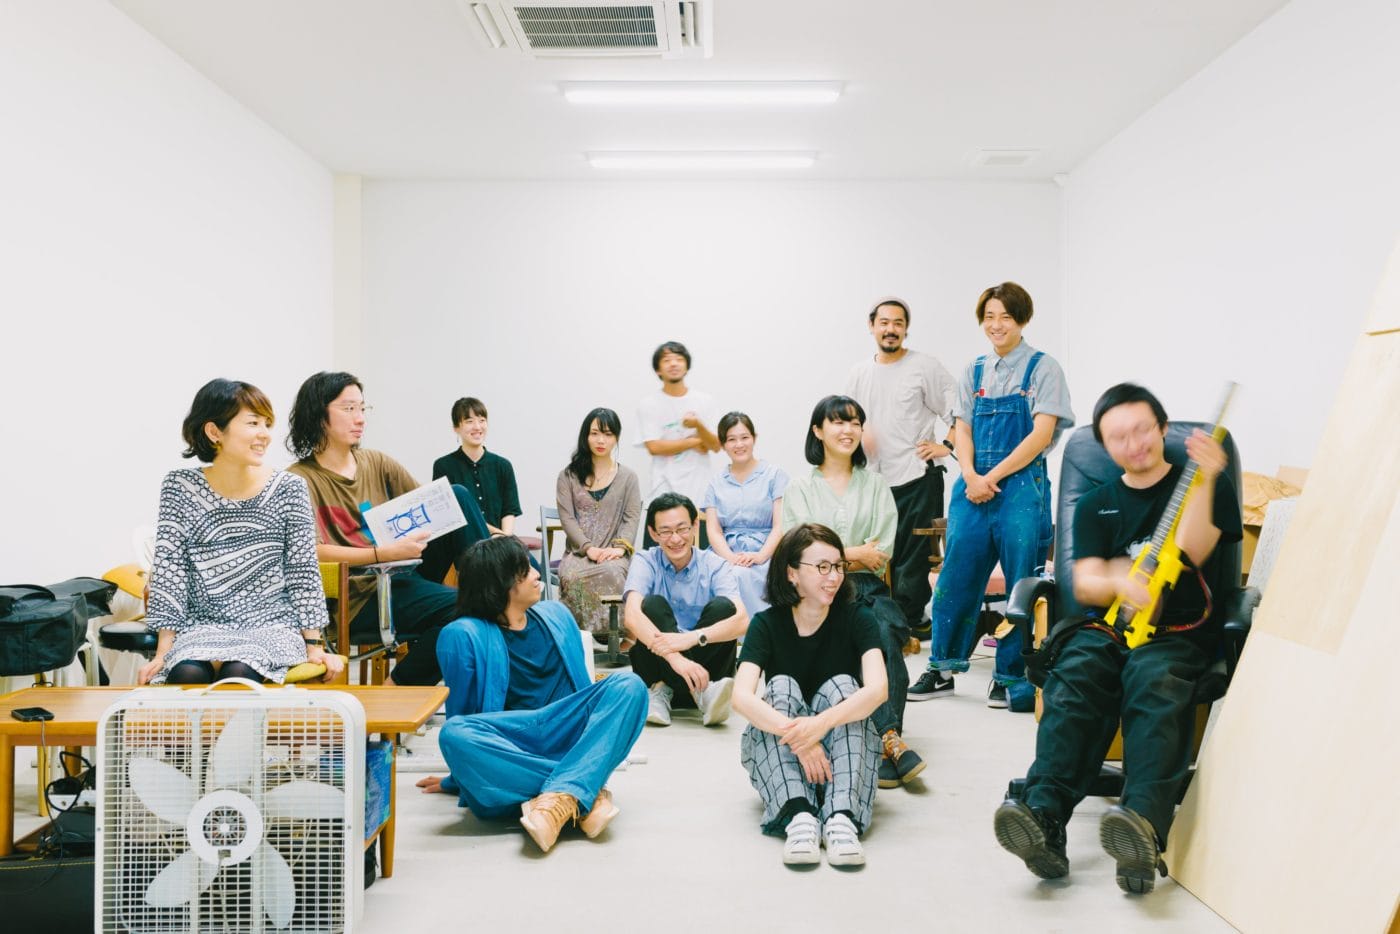 北加賀屋のアーティスト・スペース「Super Studio Kitakagaya」が、オンラインでオープンスタジオを開催。入居者11組13名のスタジオ＆インタビュー、共有スペースでの企画展示を公開。